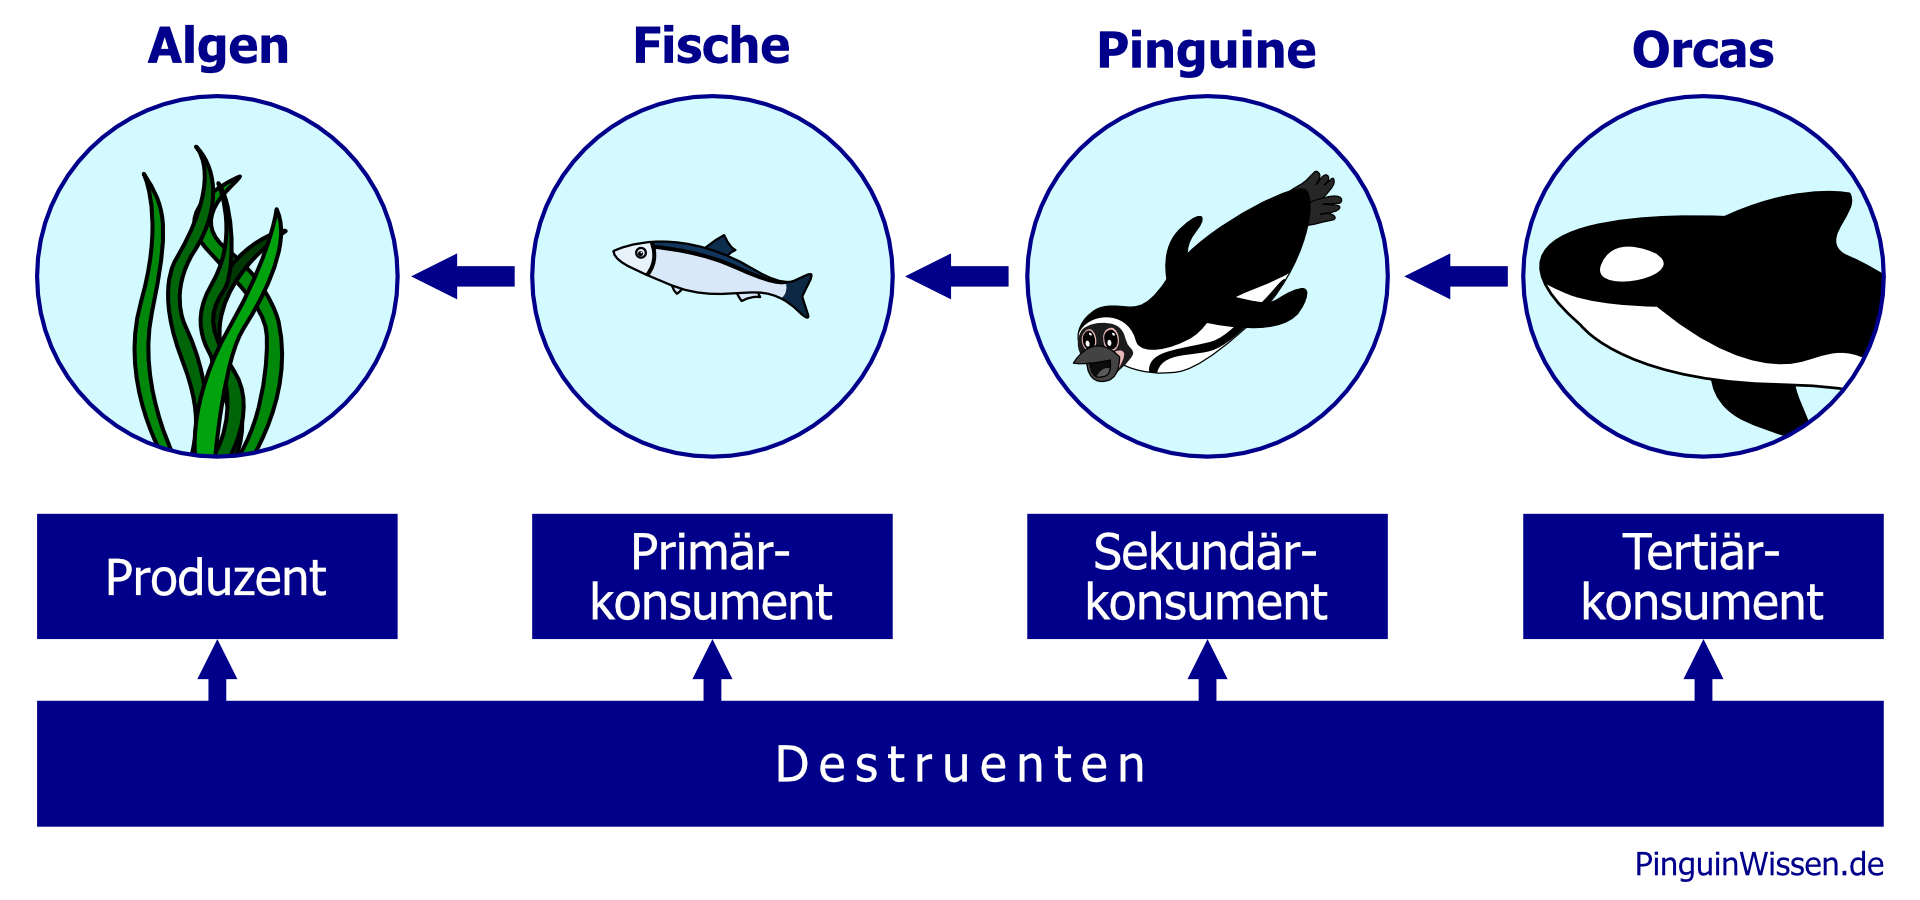 Produzenten (Algen) > Konsumenten (Fische, Pinguine, Orcas) > Destruenten